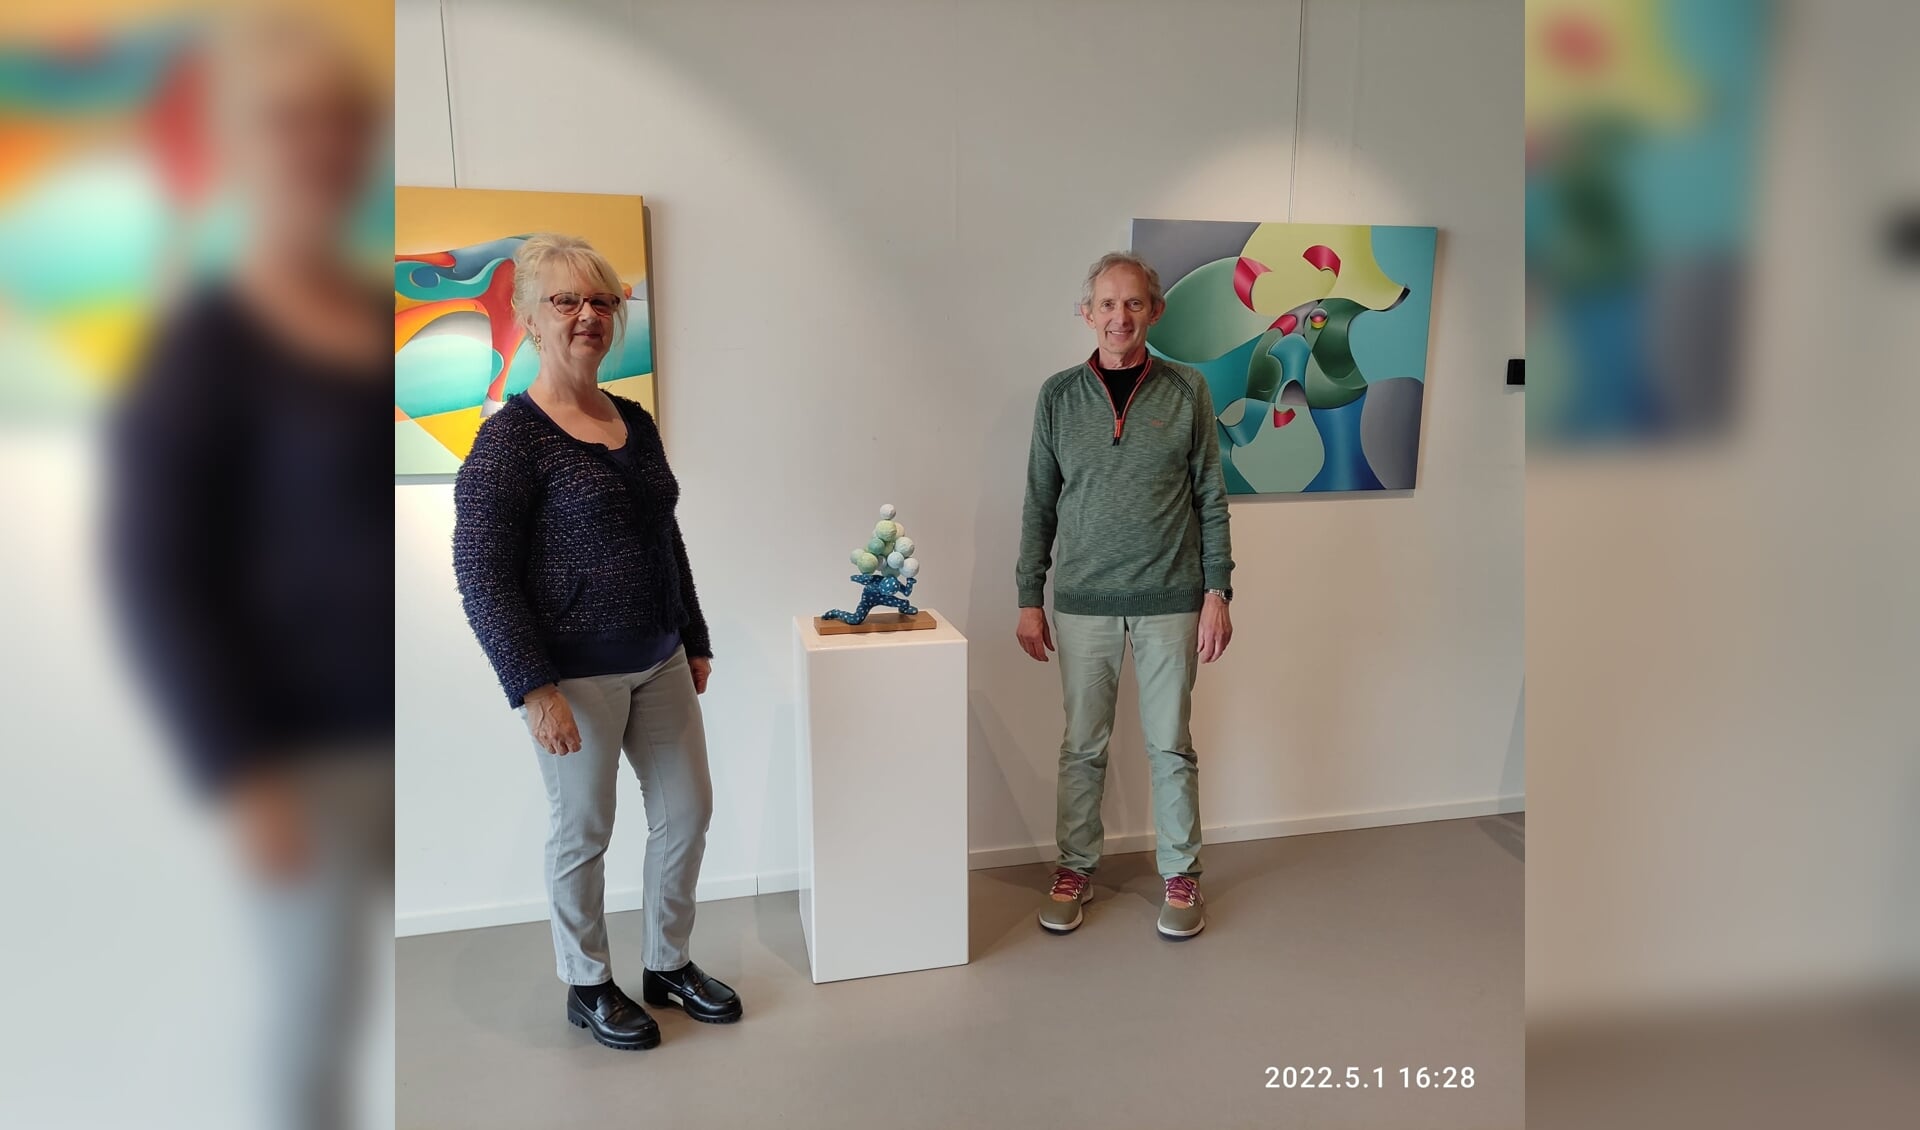 Els Franken en Joop Klein Goldewijk zijn de exposanten van de nieuwe tentoonstelling.